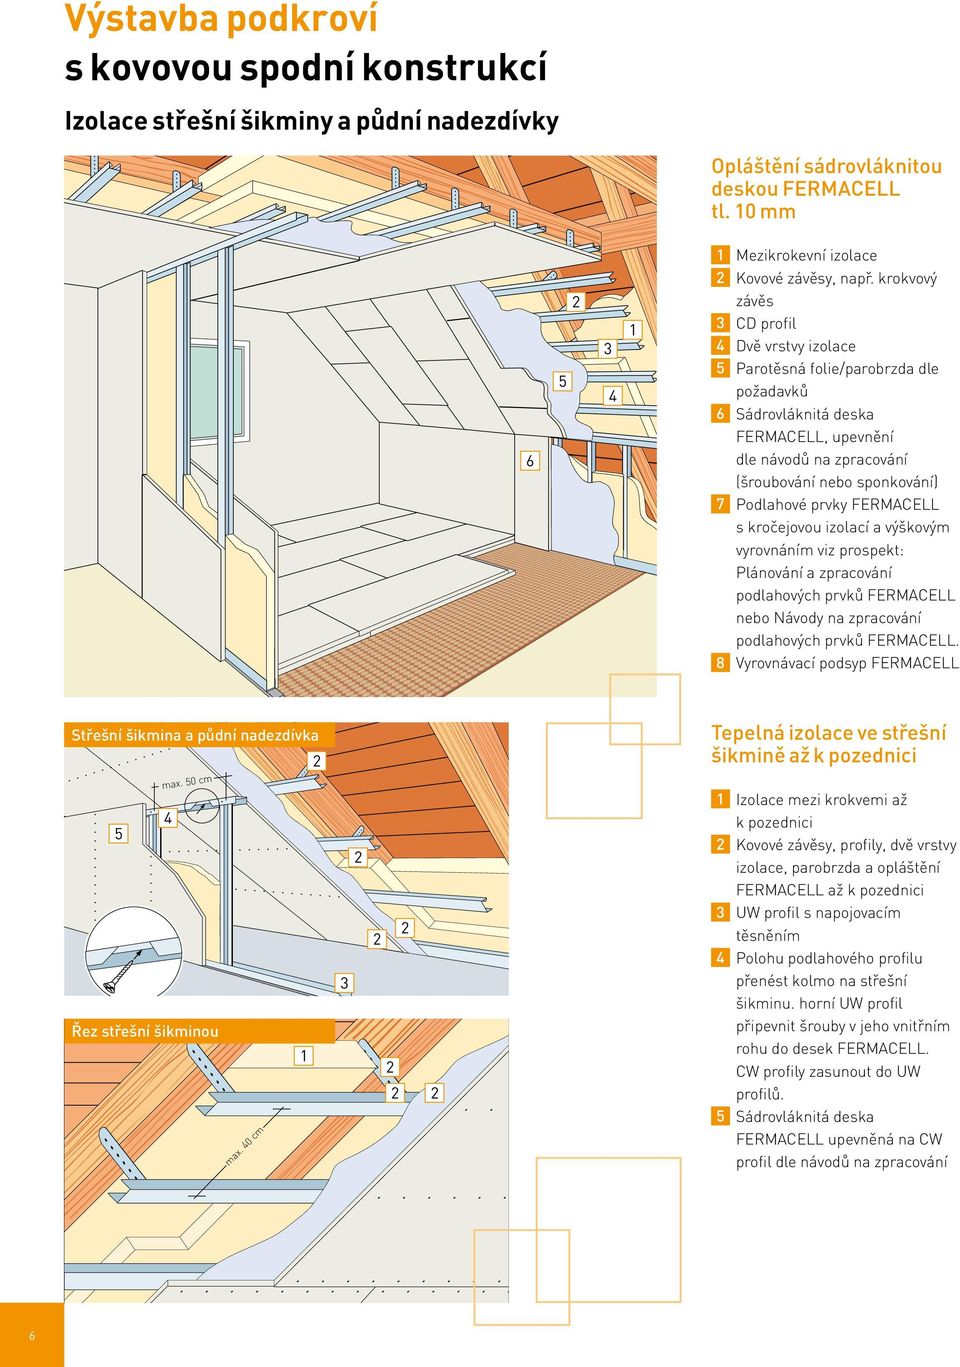 FERMACELL s kročejovou izolací a výškovým vyrovnáním viz prospekt: Plánování a zpracování podlahových prvků FERMACELL nebo Návody na zpracování podlahových prvků FERMACELL.